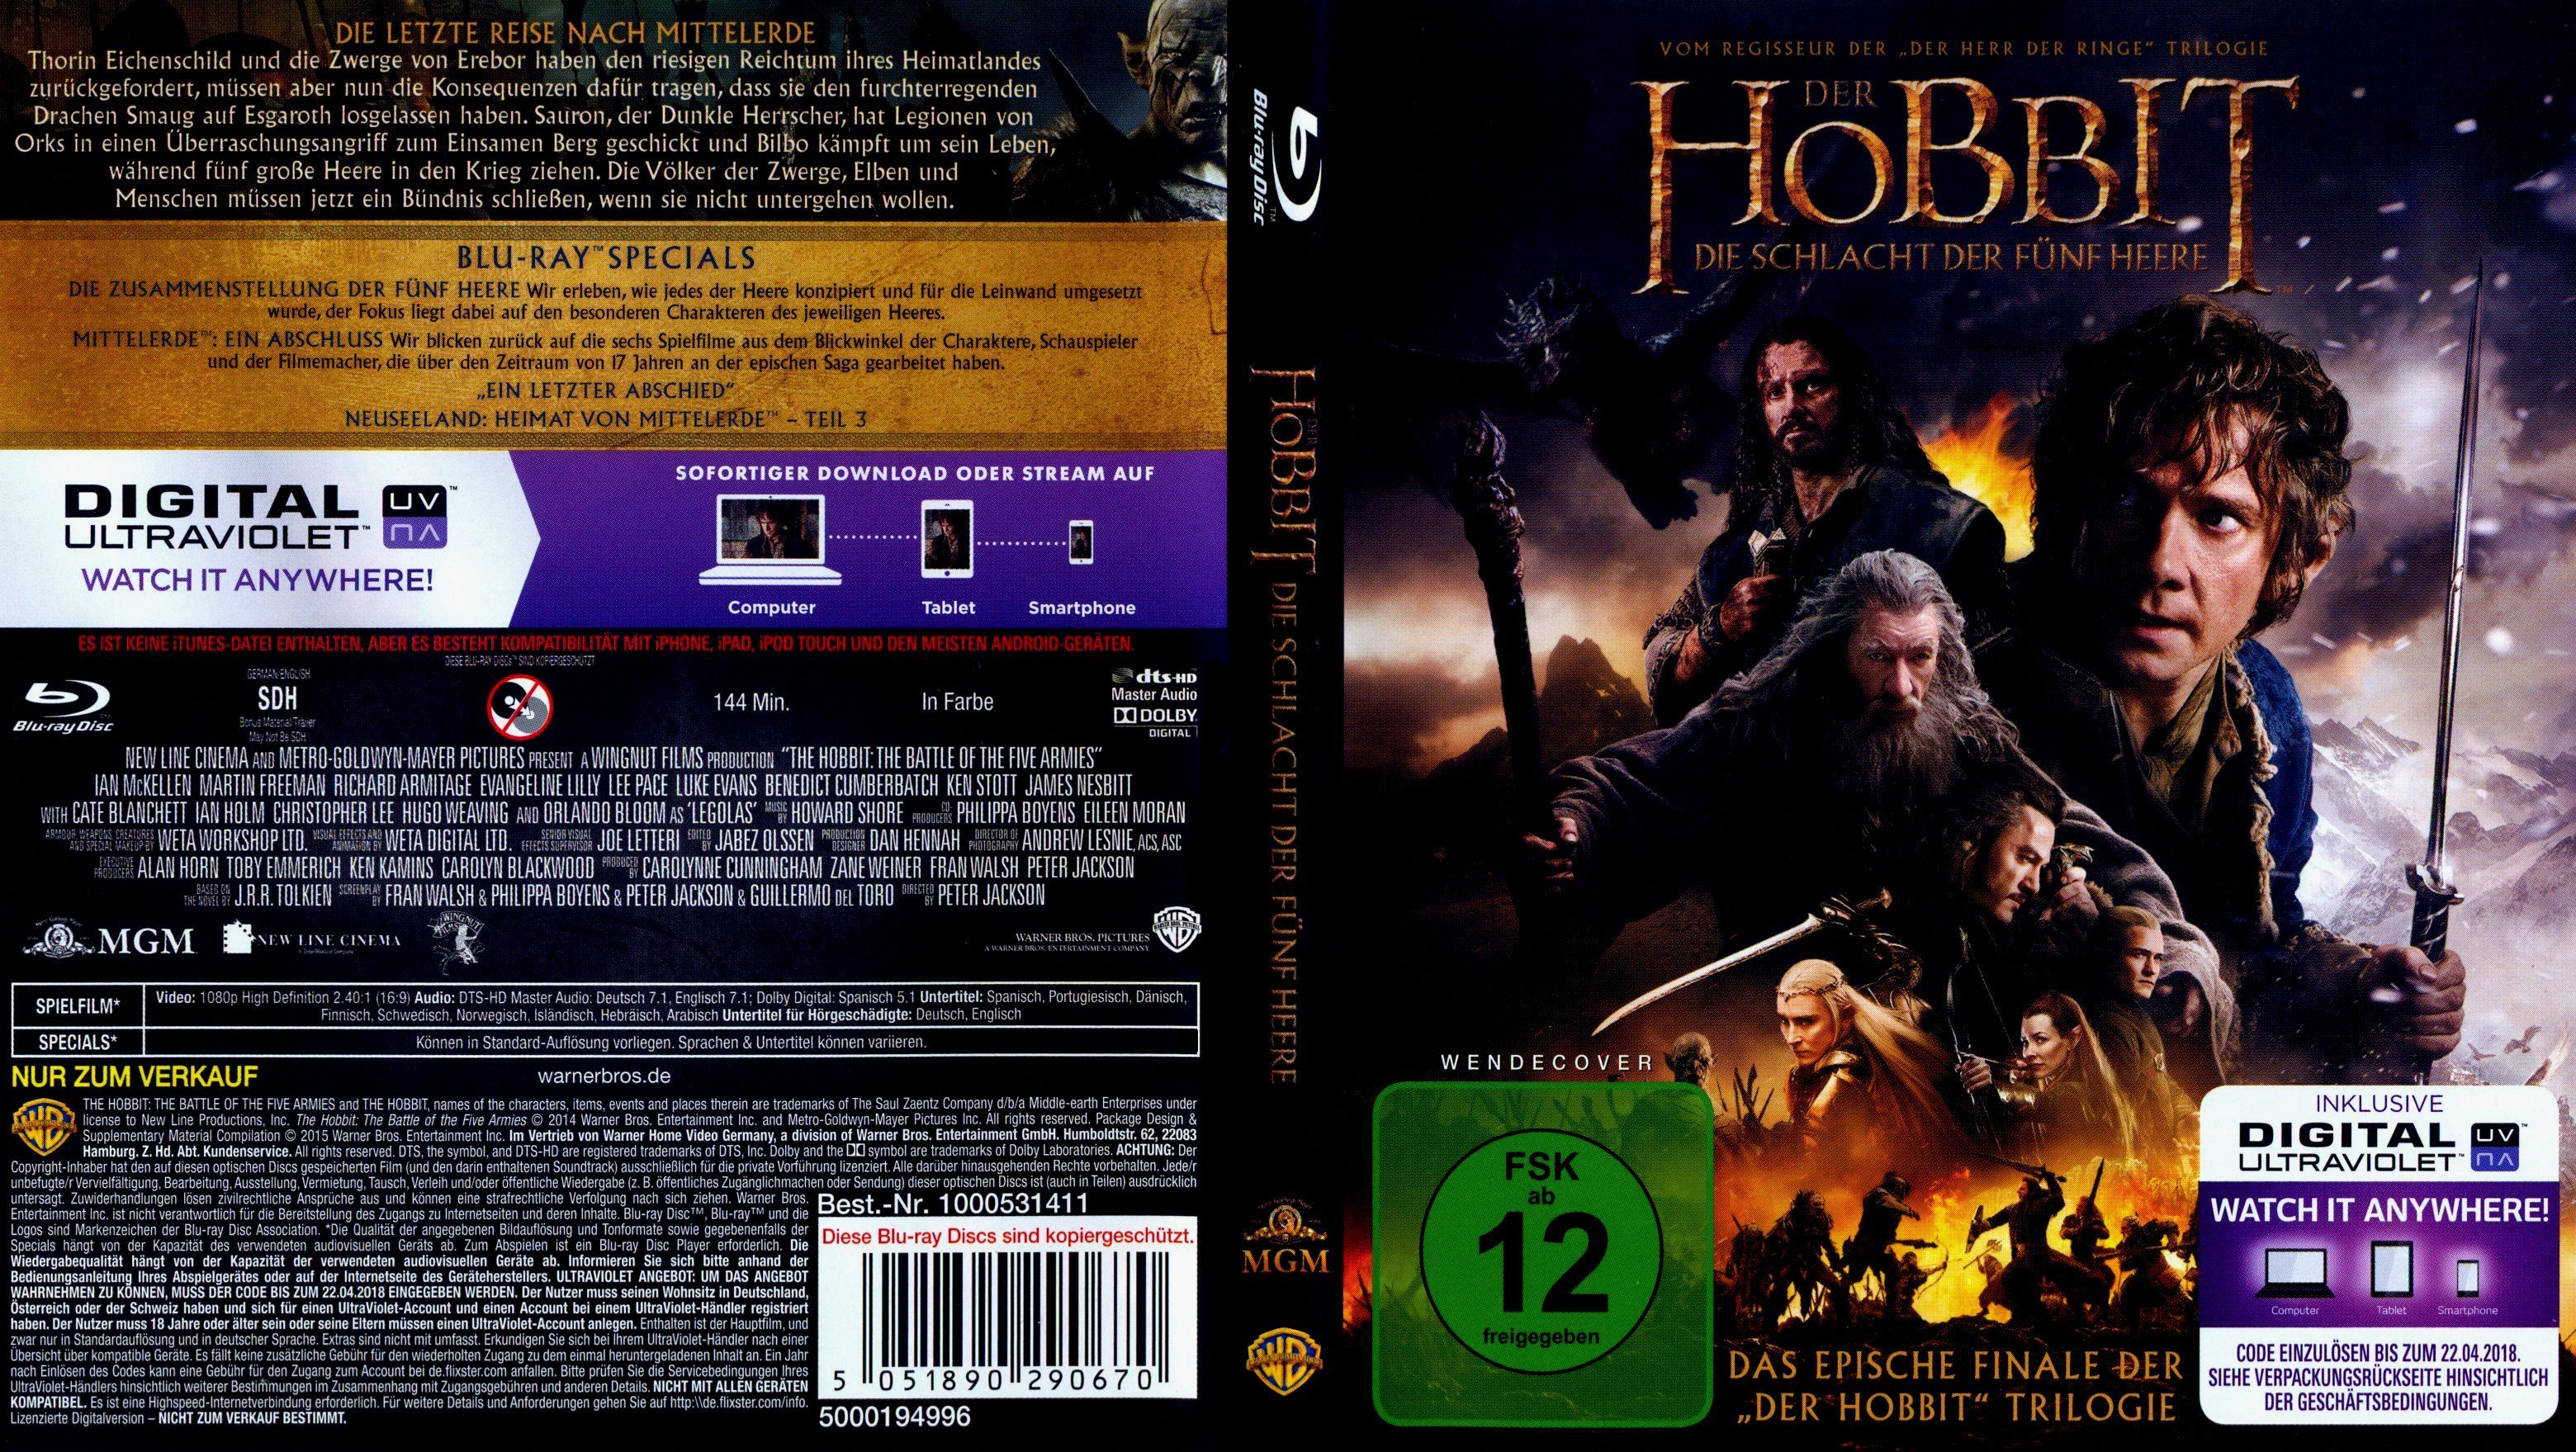 Der Hobbit Die Schlacht der funf Heere Kinoversion